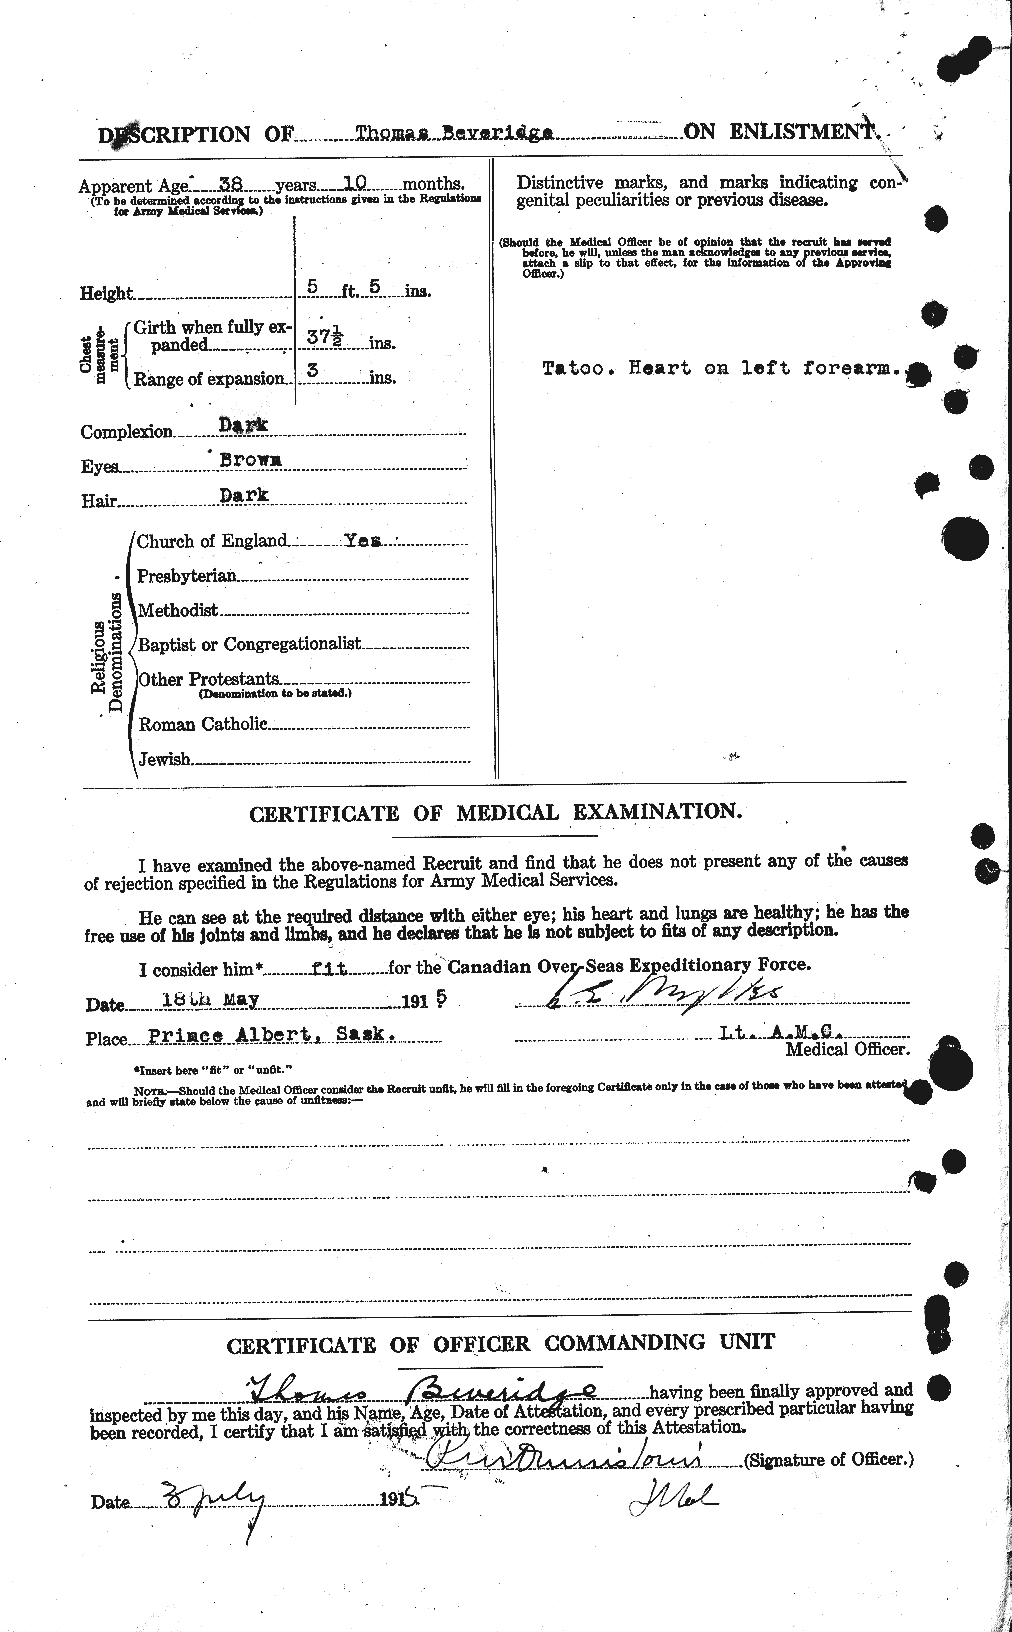 Dossiers du Personnel de la Première Guerre mondiale - CEC 237381b